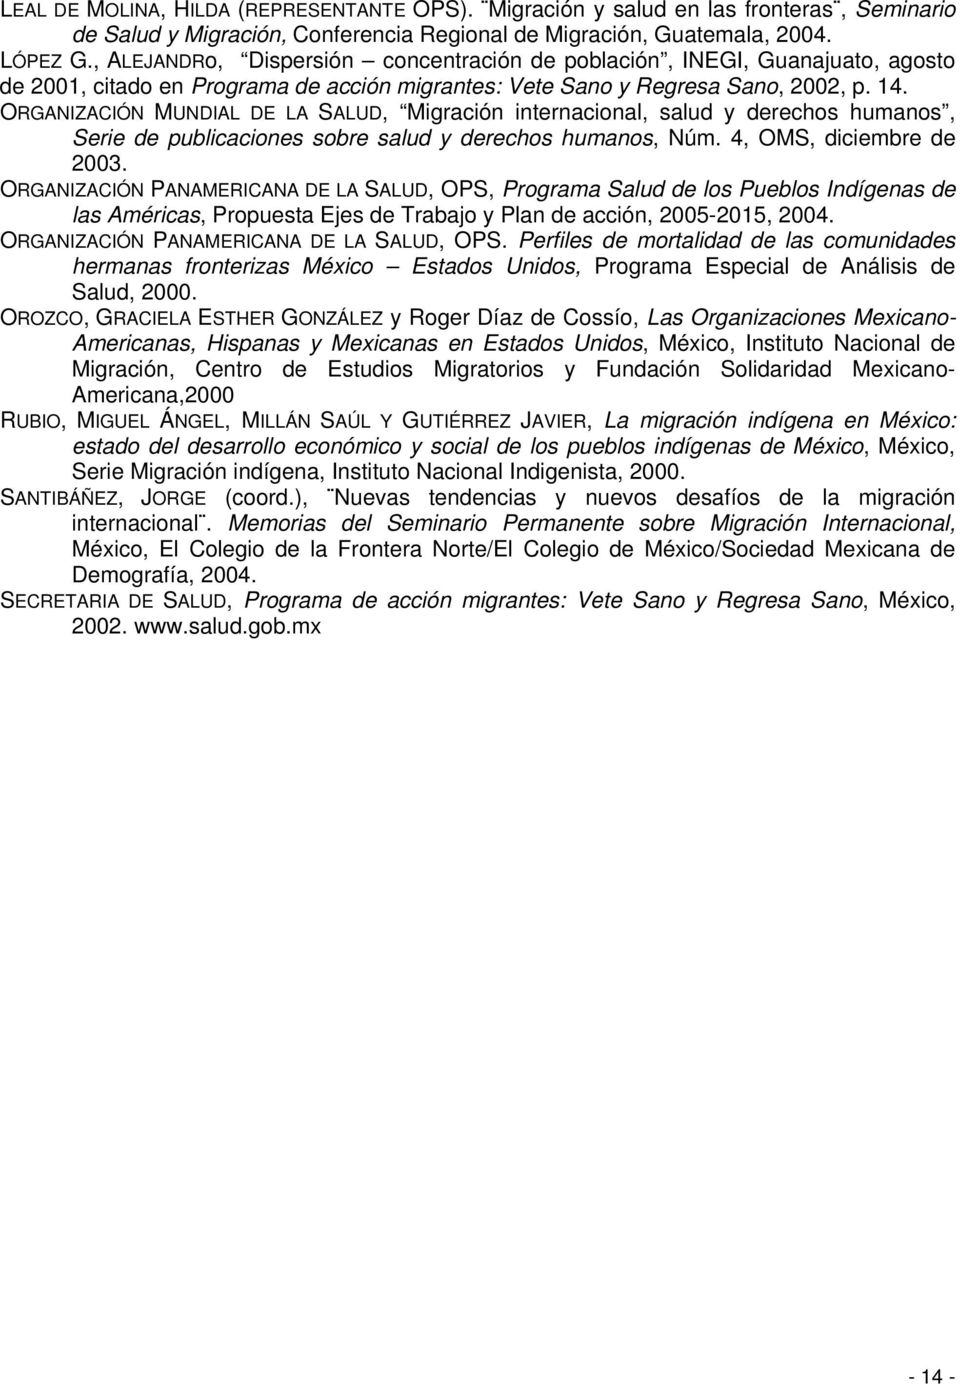 ORGANIZACIÓN MUNDIAL DE LA SALUD, Migración internacional, salud y derechos humanos, Serie de publicaciones sobre salud y derechos humanos, Núm. 4, OMS, diciembre de 2003.